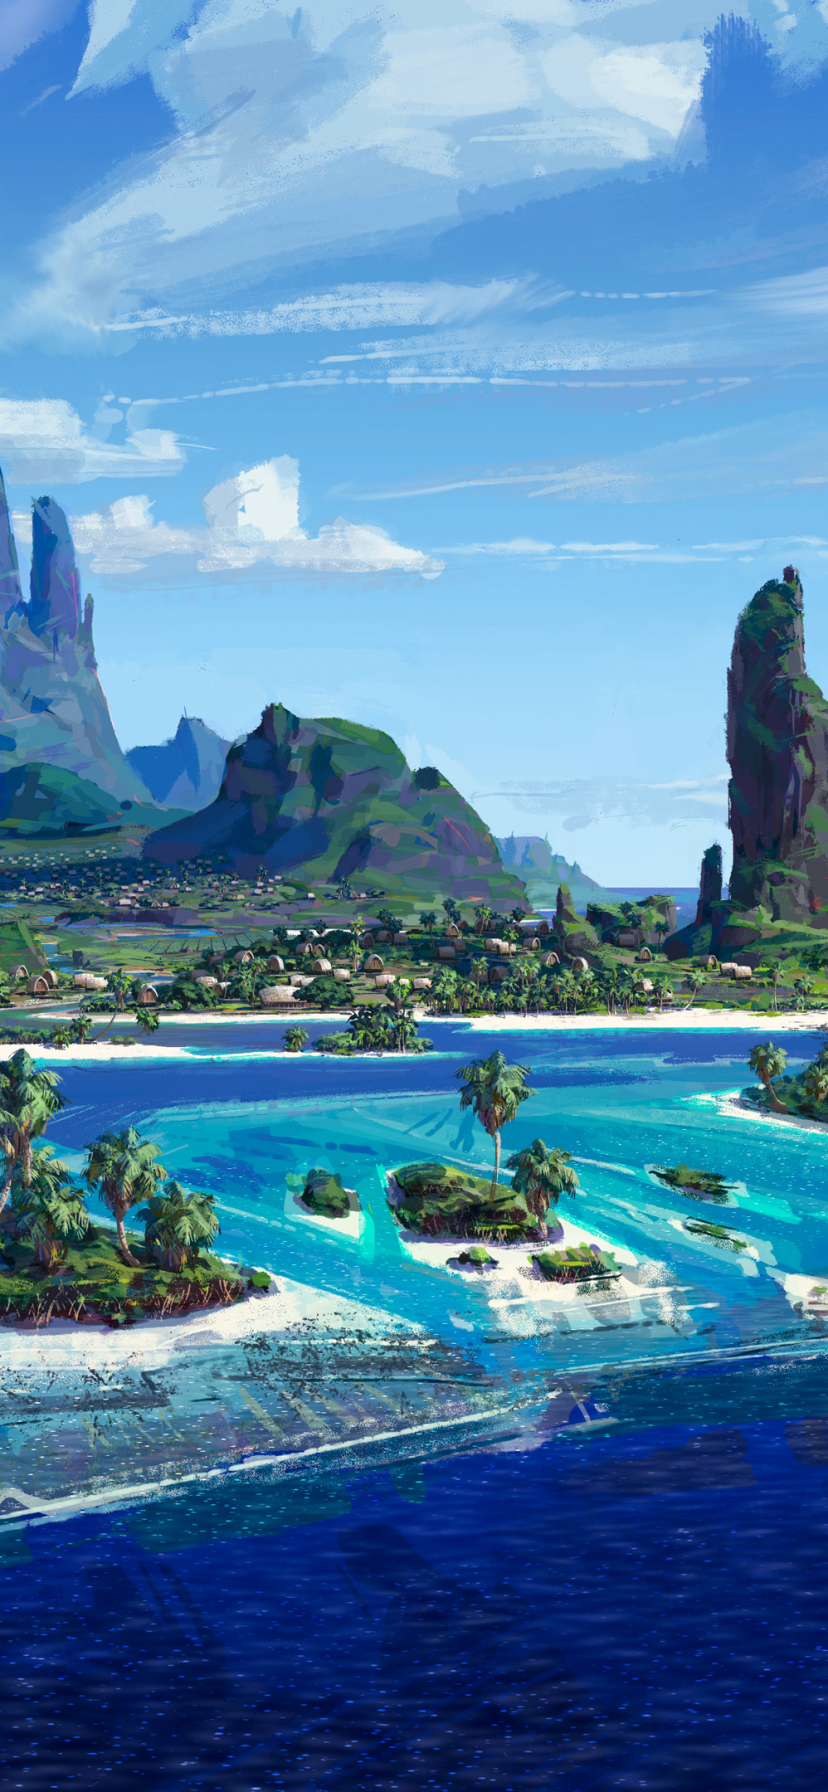 Descarga gratuita de fondo de pantalla para móvil de Isla, Películas, Moana: Un Mar De Aventuras.